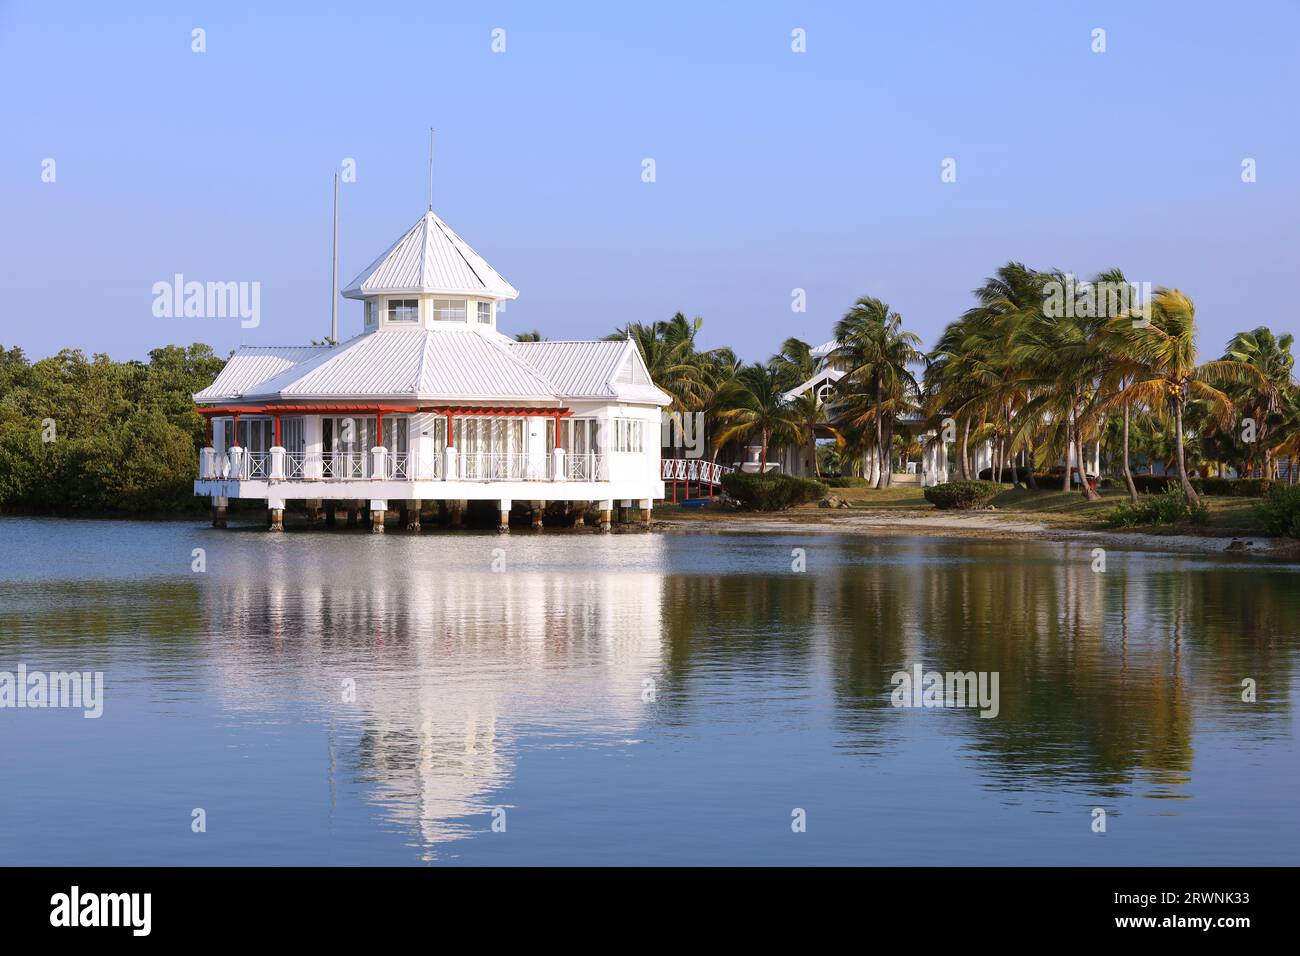 Vue pittoresque à la maison blanche sur pilotis sur la plage de la mer tropicale avec des palmiers de cocotiers. Villa dans une baie sur l'île des Caraïbes Banque D'Images